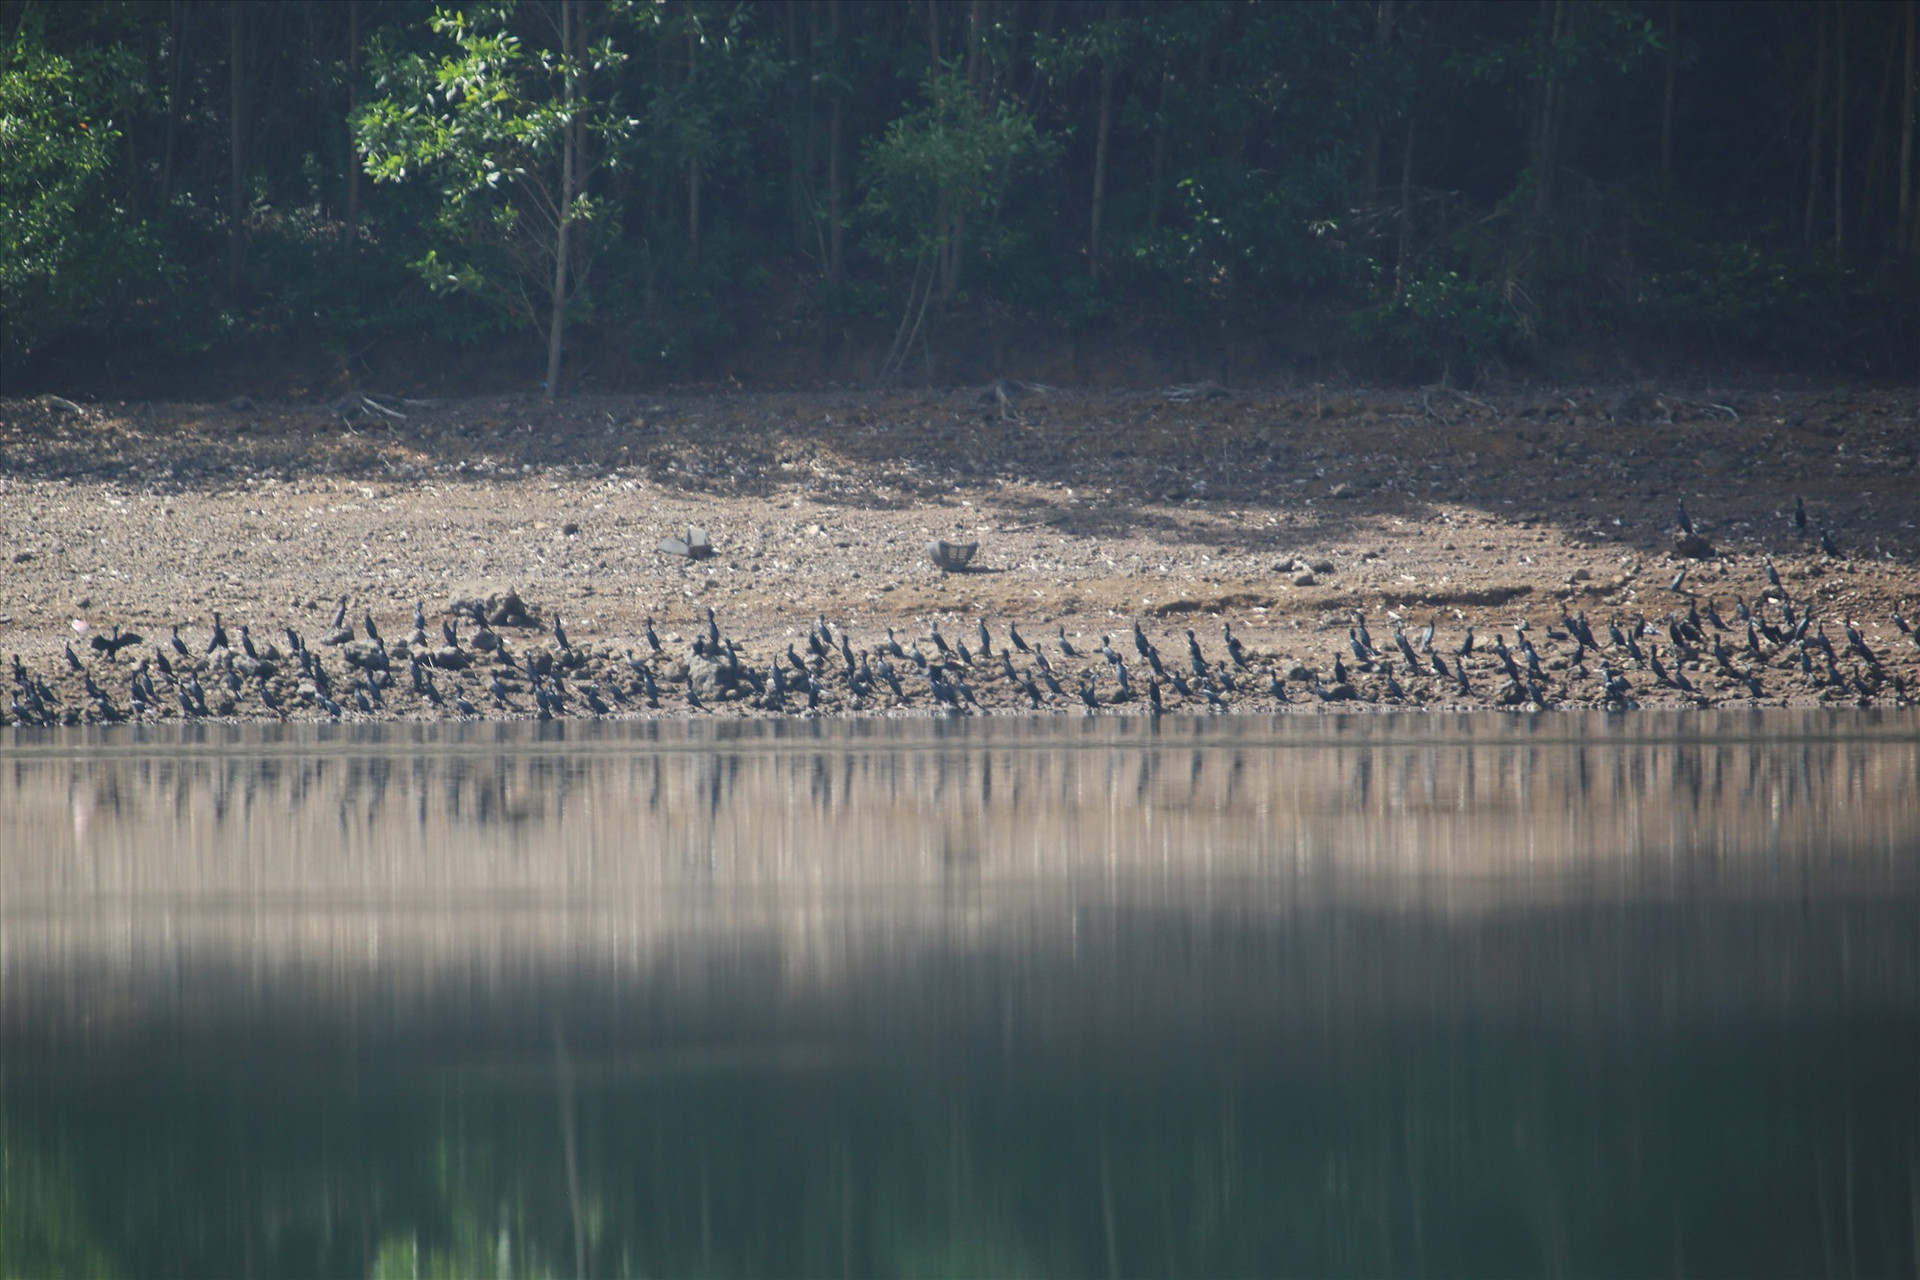 Hơn 3.000 con chim cồng cộc đang sinh sống tại hồ Thái Xuân. Ảnh: N.Q